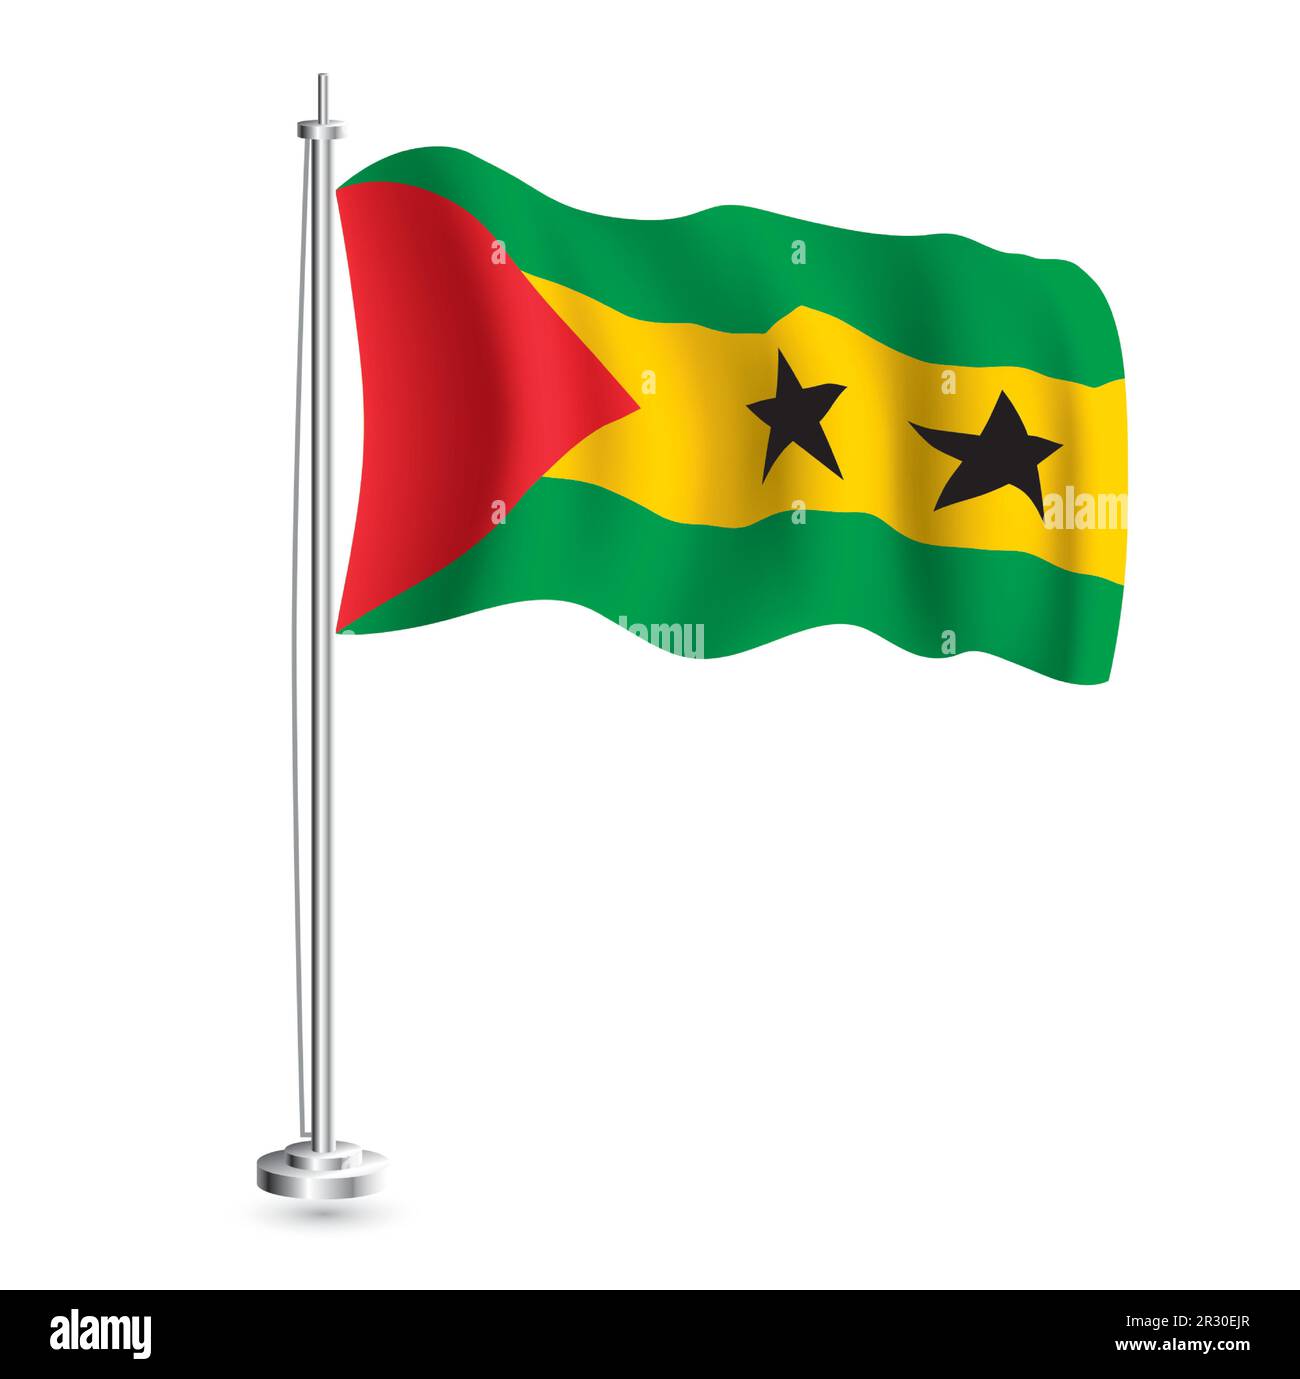 Drapeau de Sao Tomé-et-principe. Drapeau vague réaliste isolé du pays de Sao Tomé-et-principe à Flagpole. Illustration vectorielle. Illustration de Vecteur